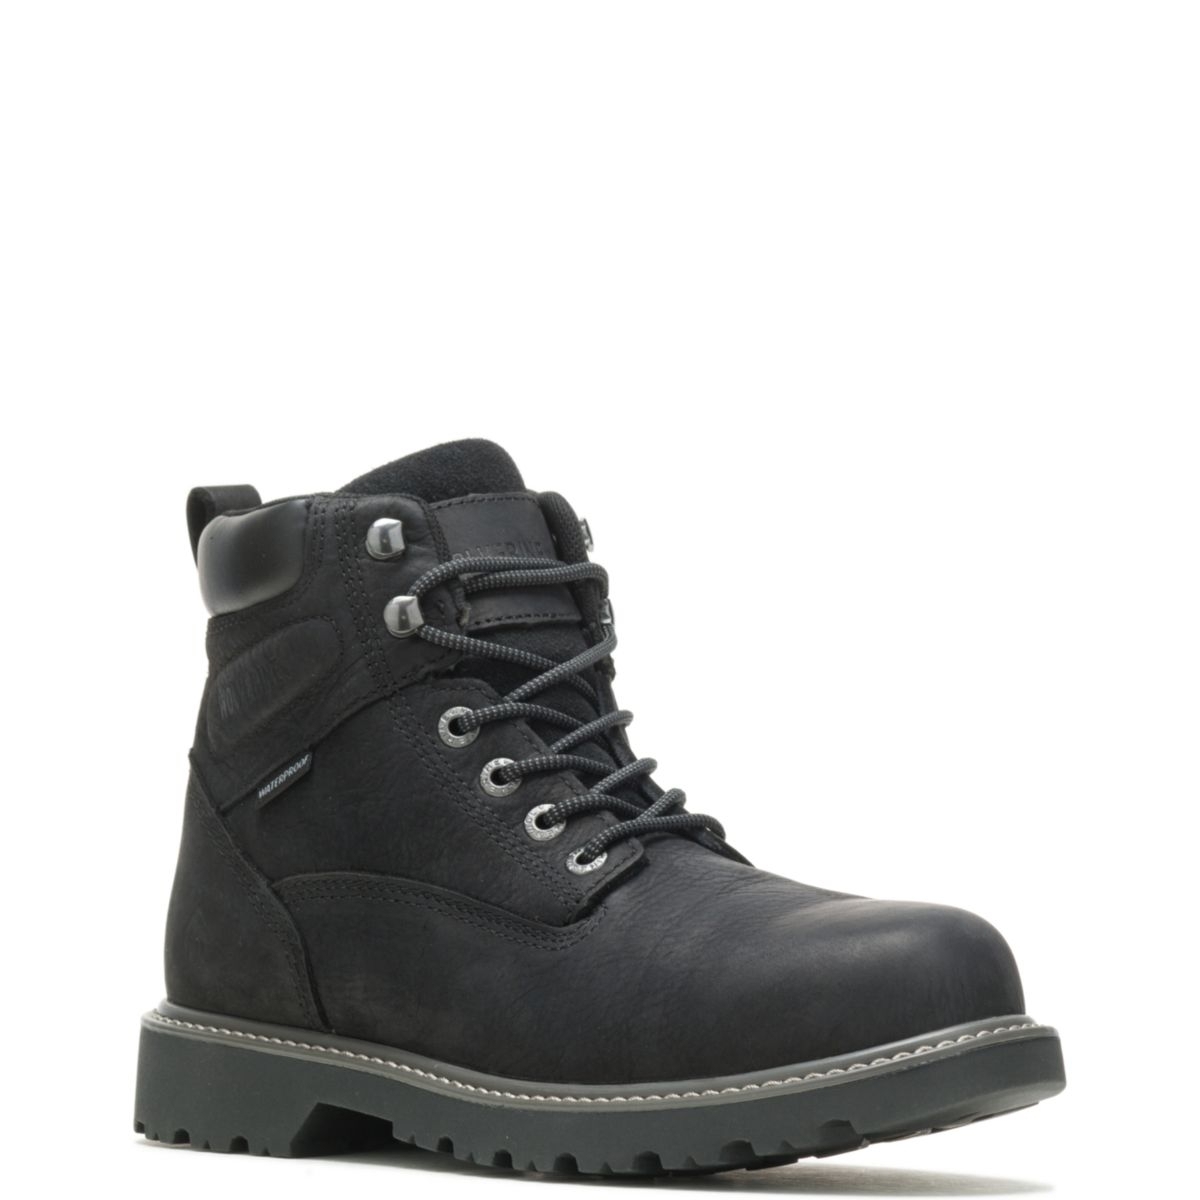 WOLVERINE Men's Floorhand 6 Waterproof Steel Toe Work Boot Black - W10694 BLACK - BLACK, 8.5